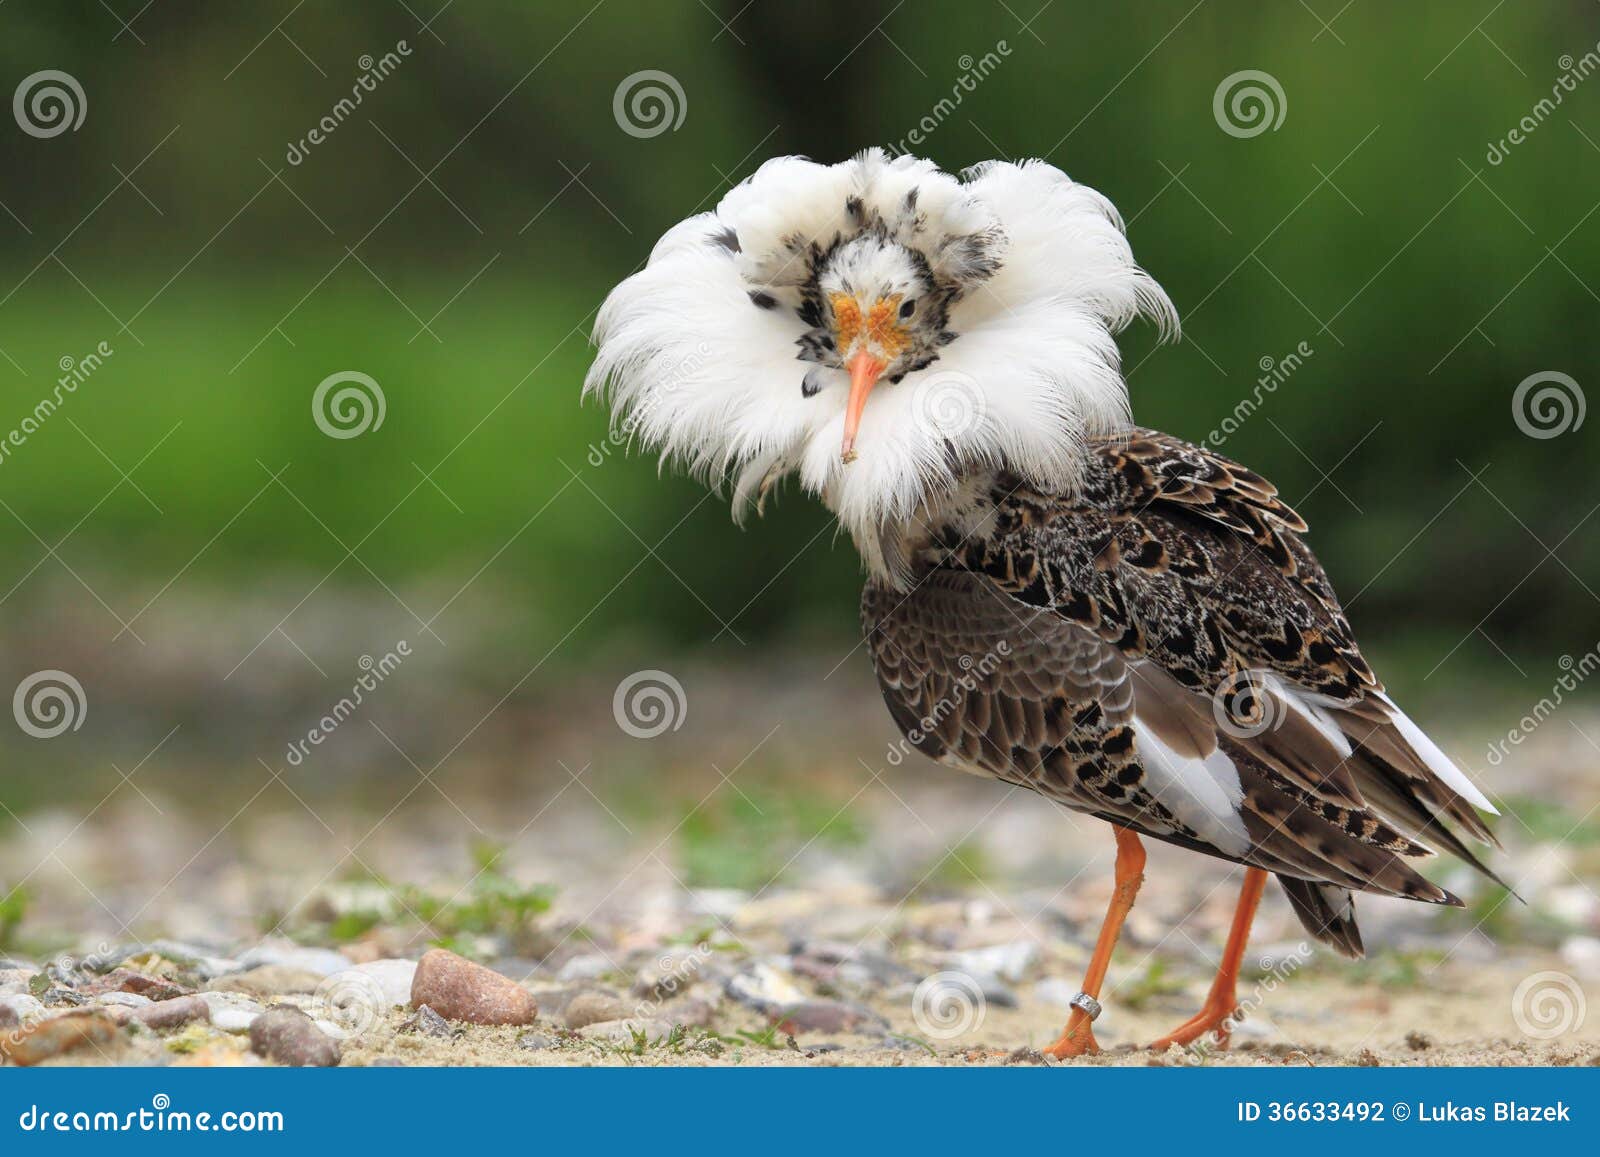 ruff in breeding plumage